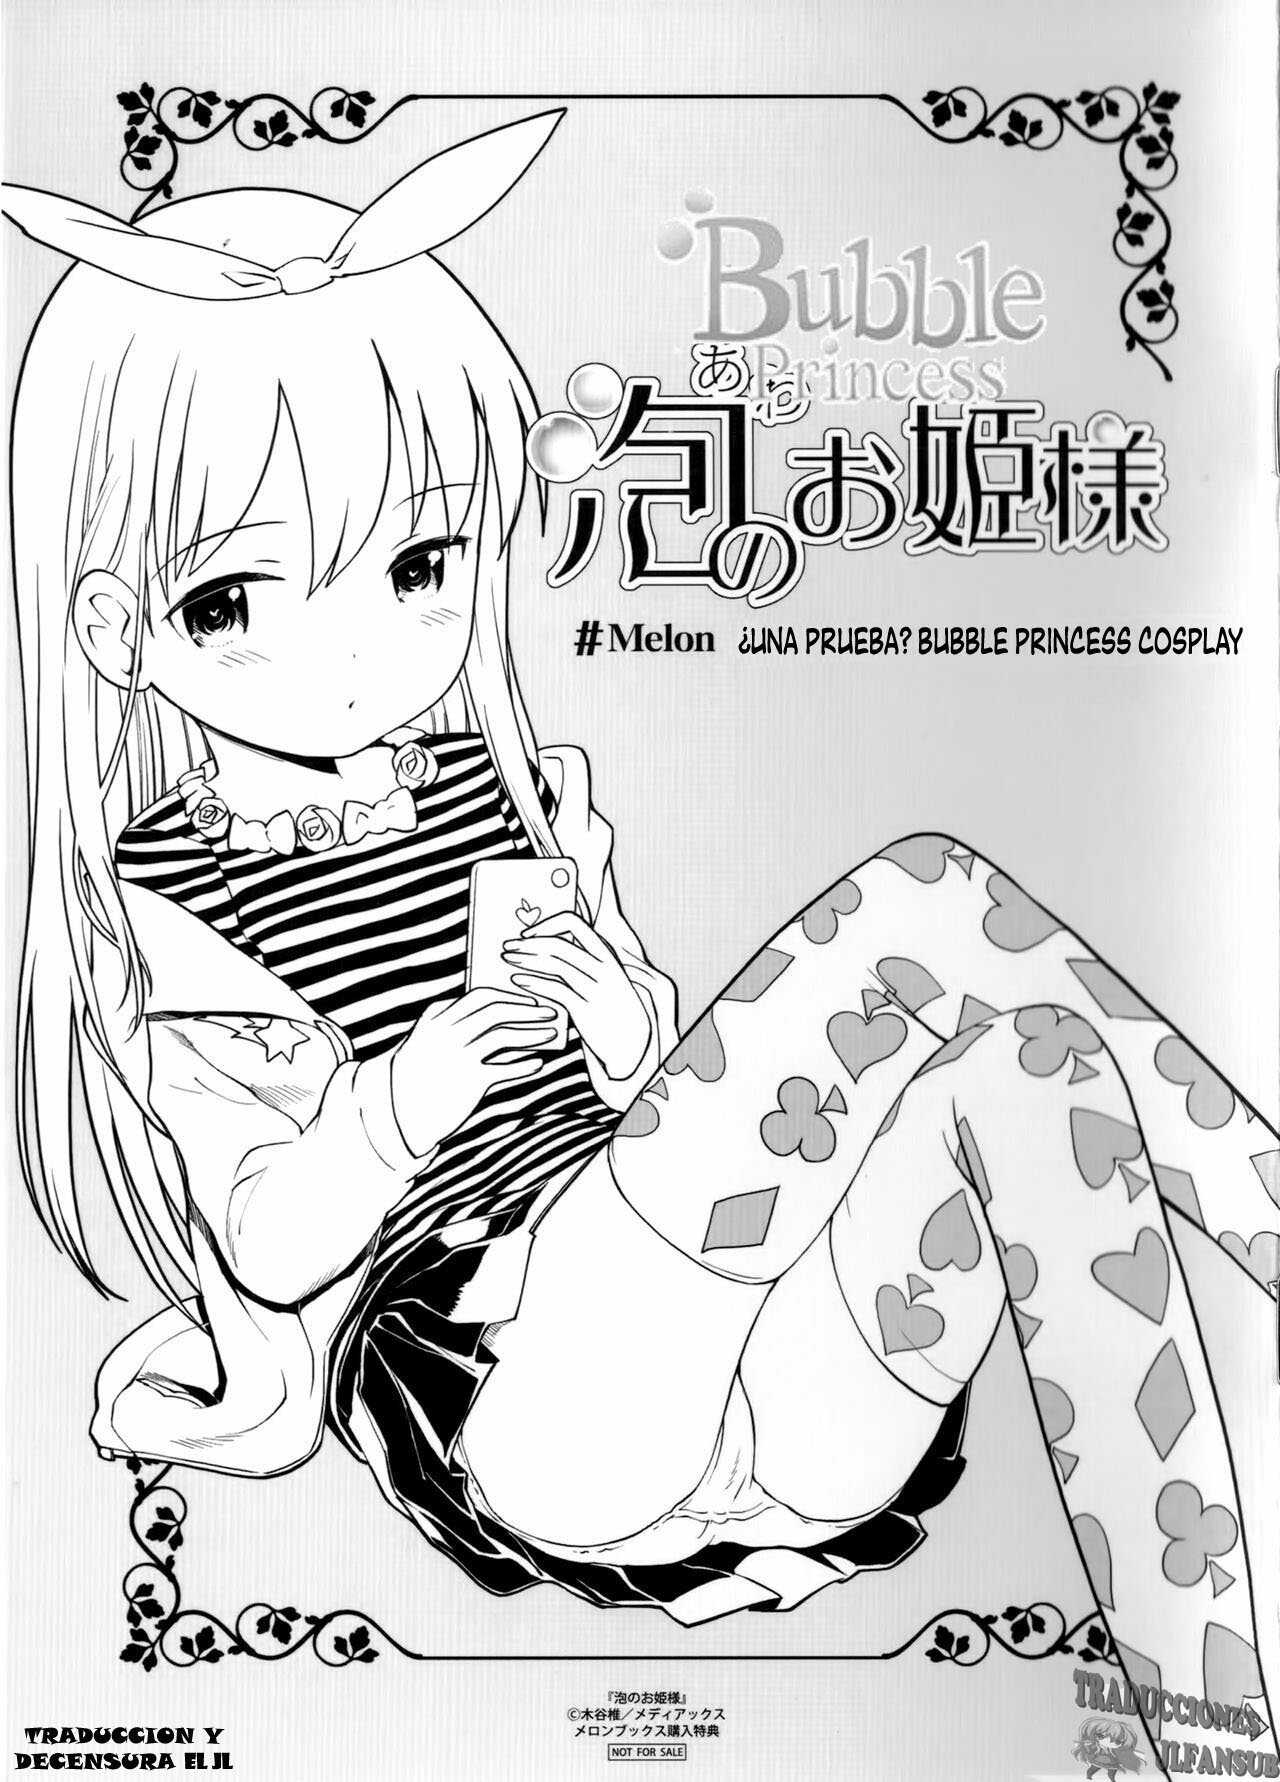 Bubbles Princess - Melonbooks Booklet - 1